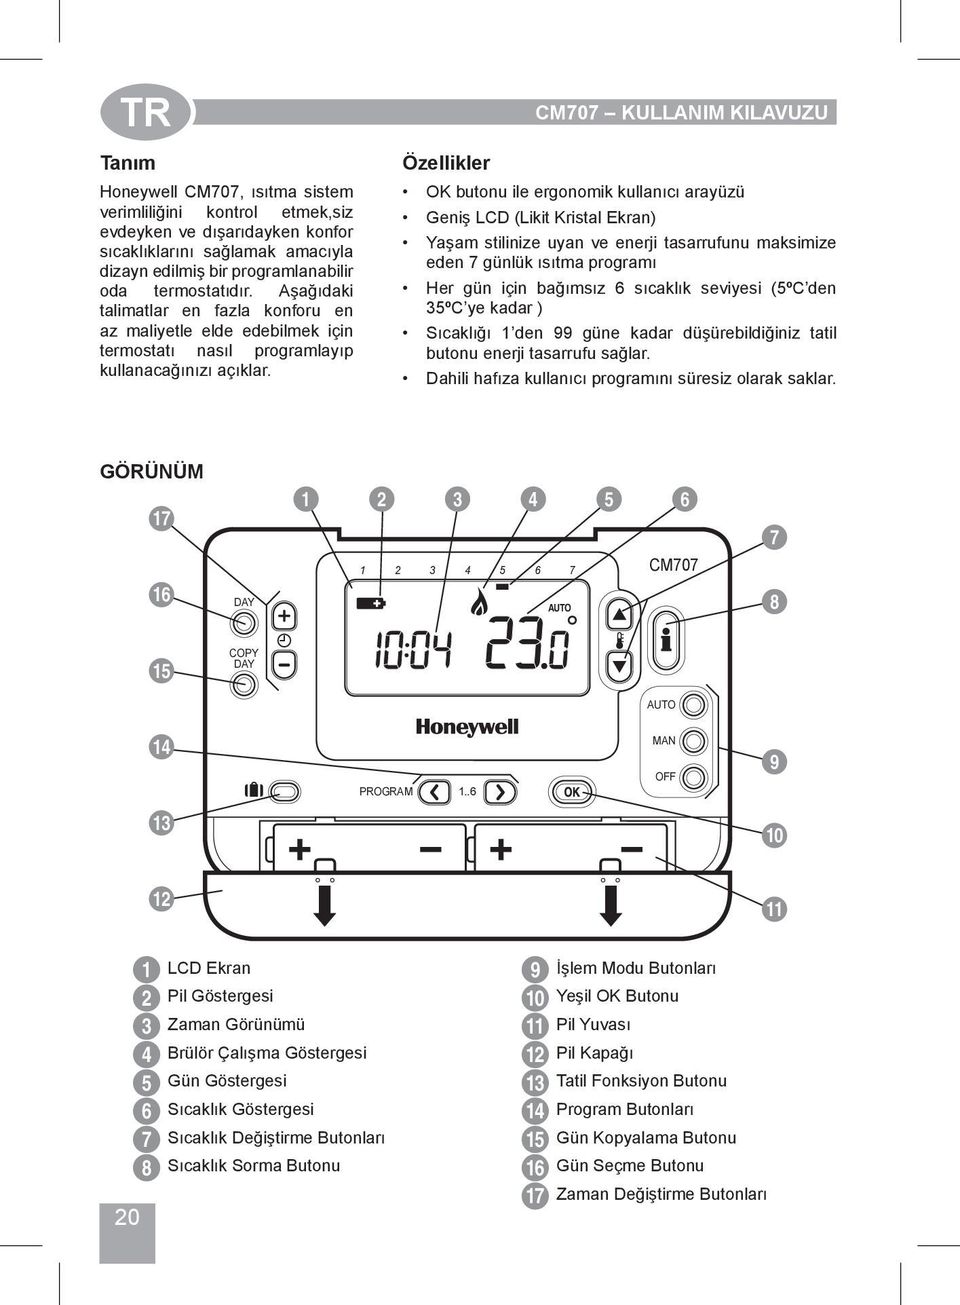 Özellikler CM707 KULLANIM KILAVUZU OK butonu ile ergonomik kullanıcı arayüzü Geniş LCD (Likit Kristal Ekran) Yaşam stilinize uyan ve enerji tasarrufunu maksimize eden 7 günlük ısıtma programı Her gün